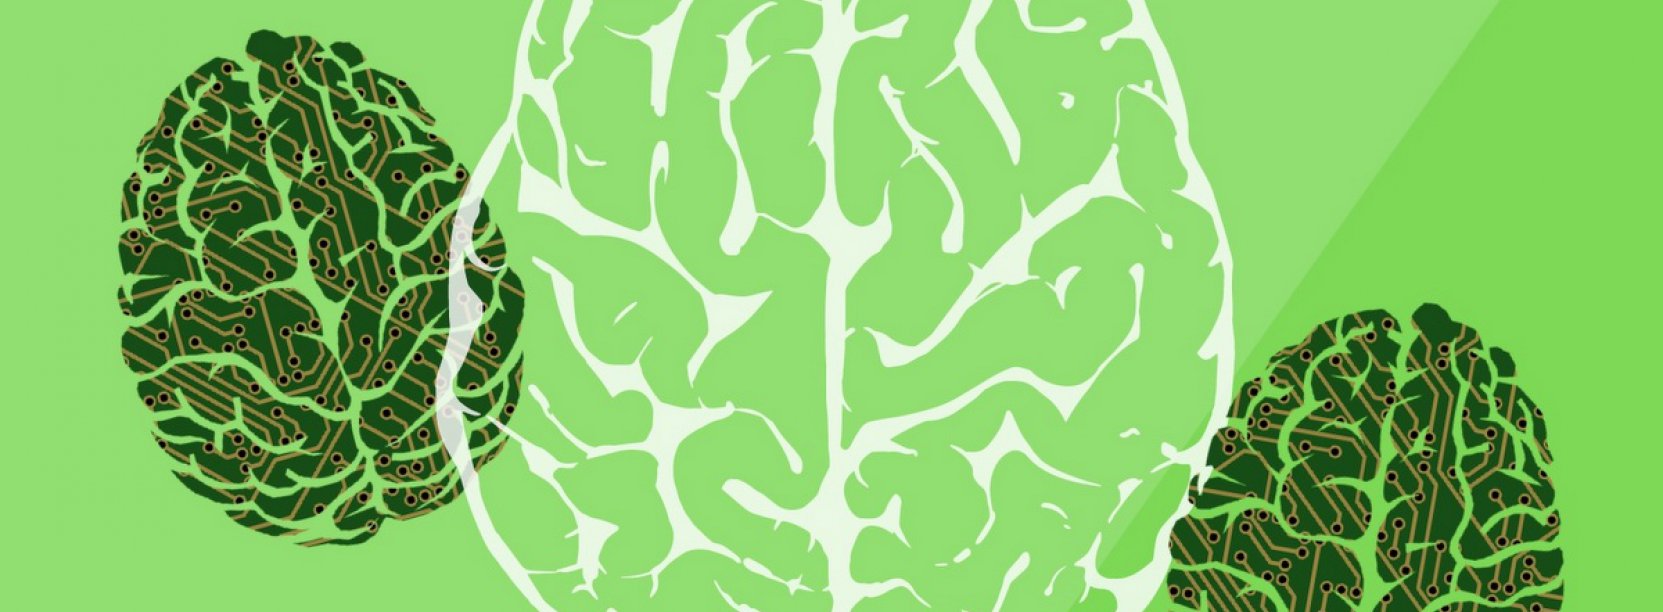 Szkice muzgu na zielonym tle